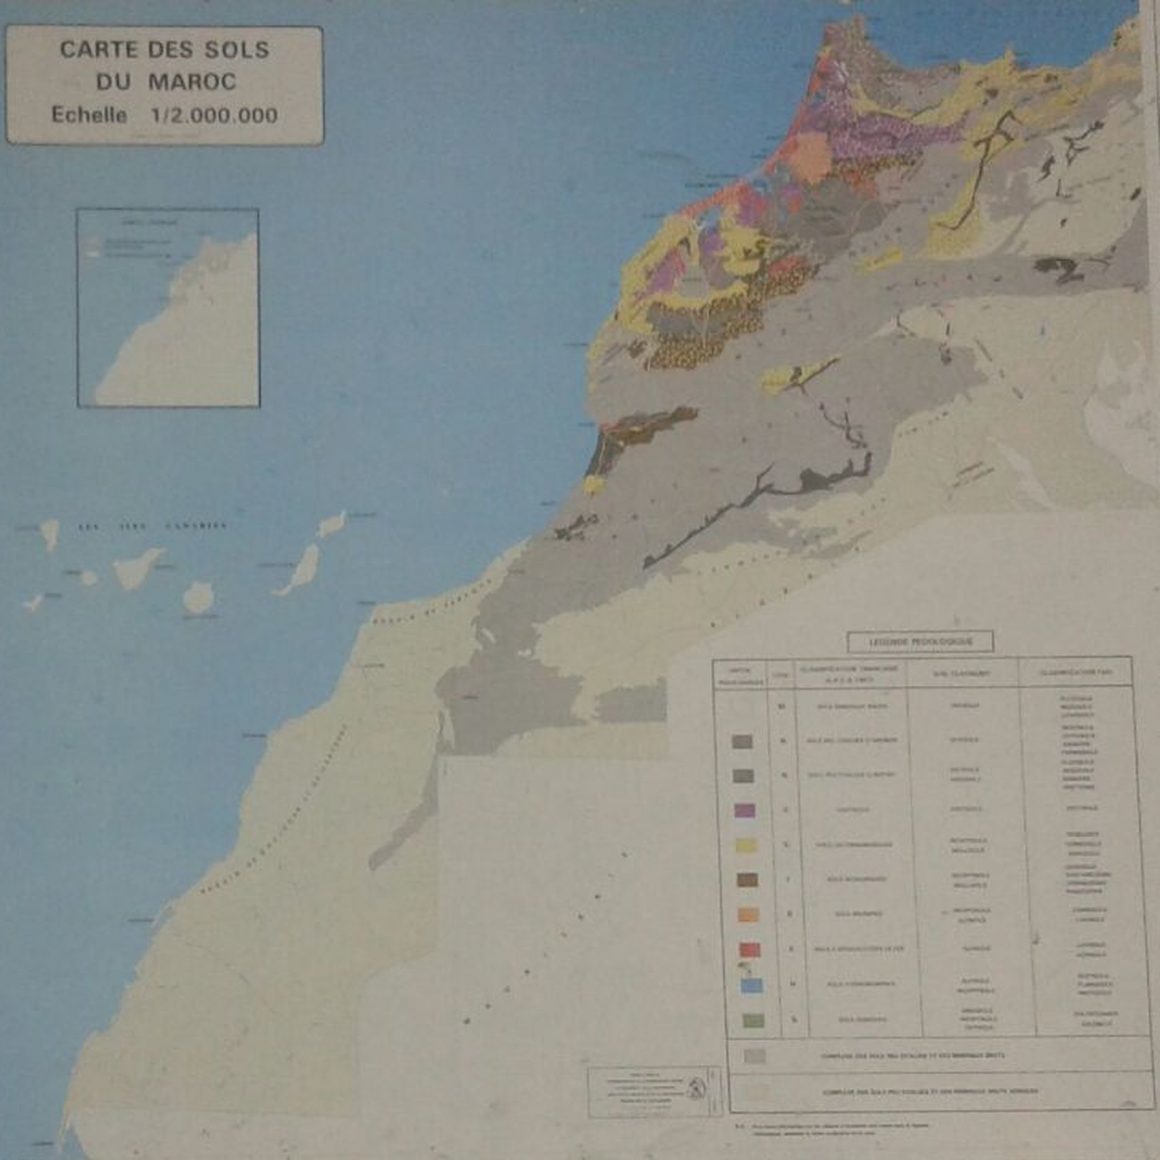 Marruecos censura los mapas que no incluyen el Sahara Occidental dentro de sus fronteras